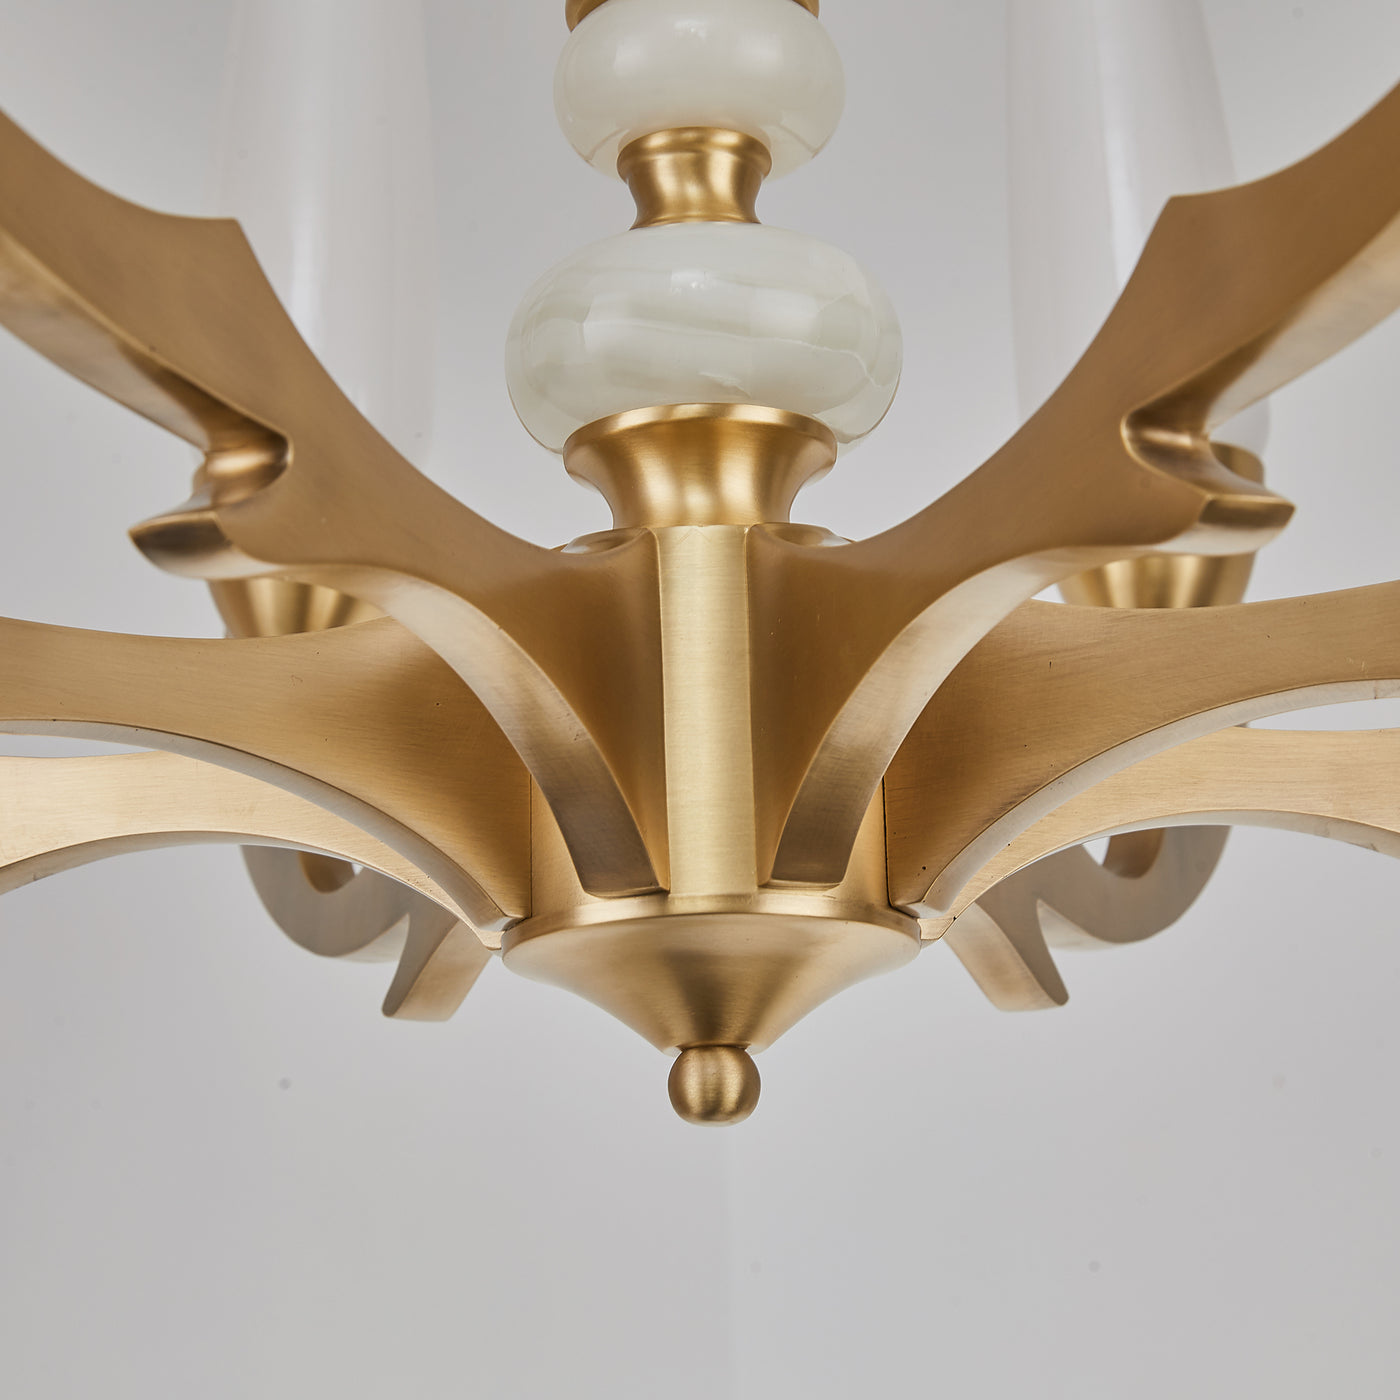 Creative double layer golden chandelier